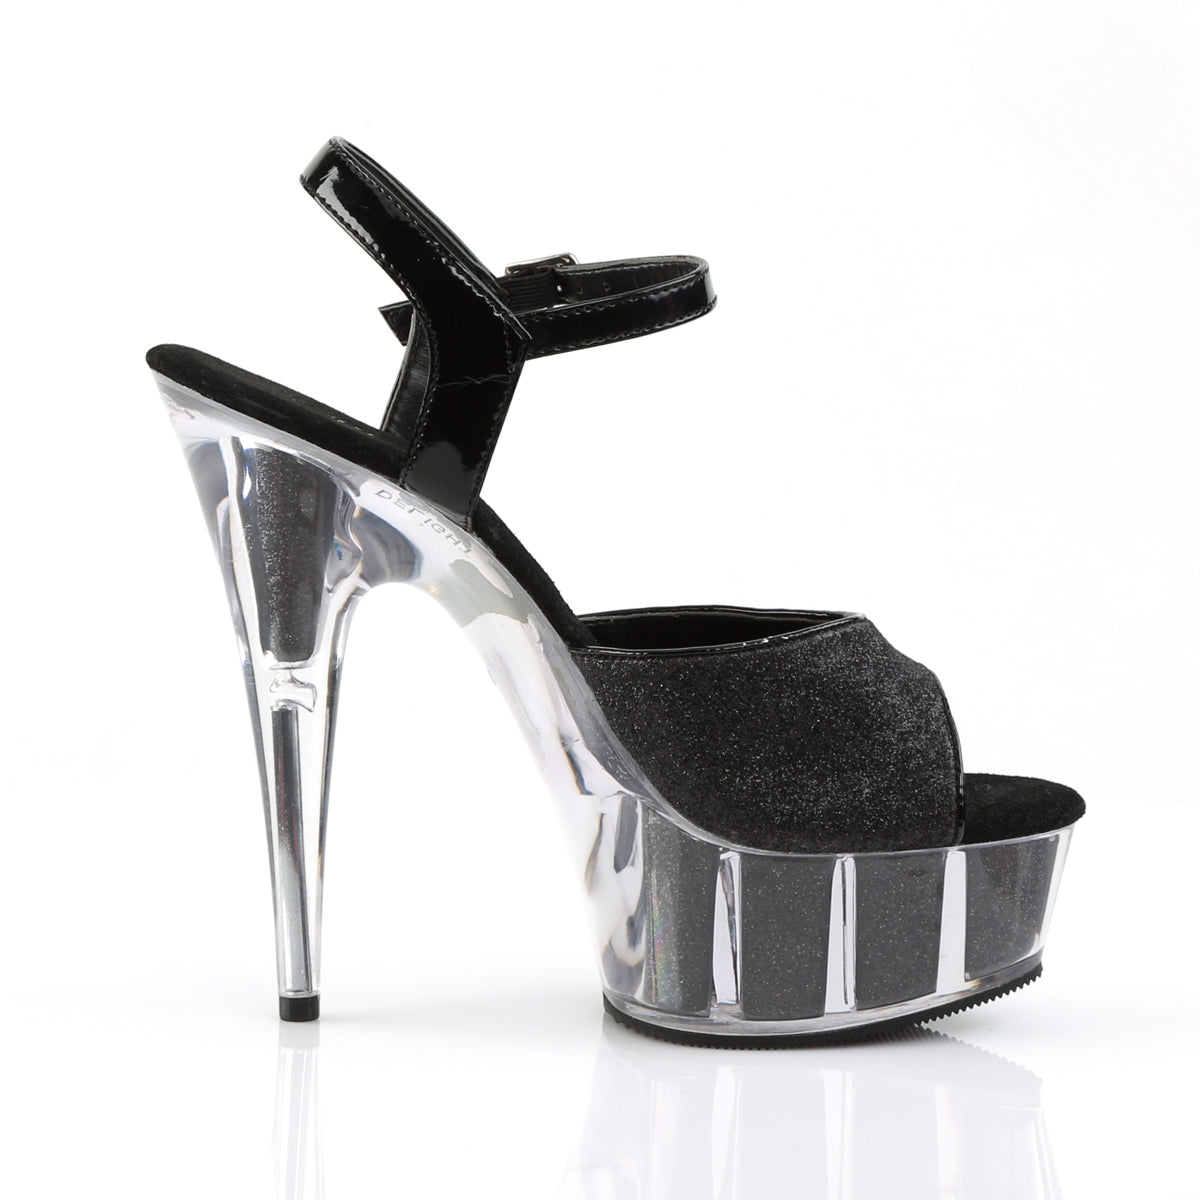 Pleaser Womens Sandals DELIGHT-609-5G Blk Gltr/Blk Gltr